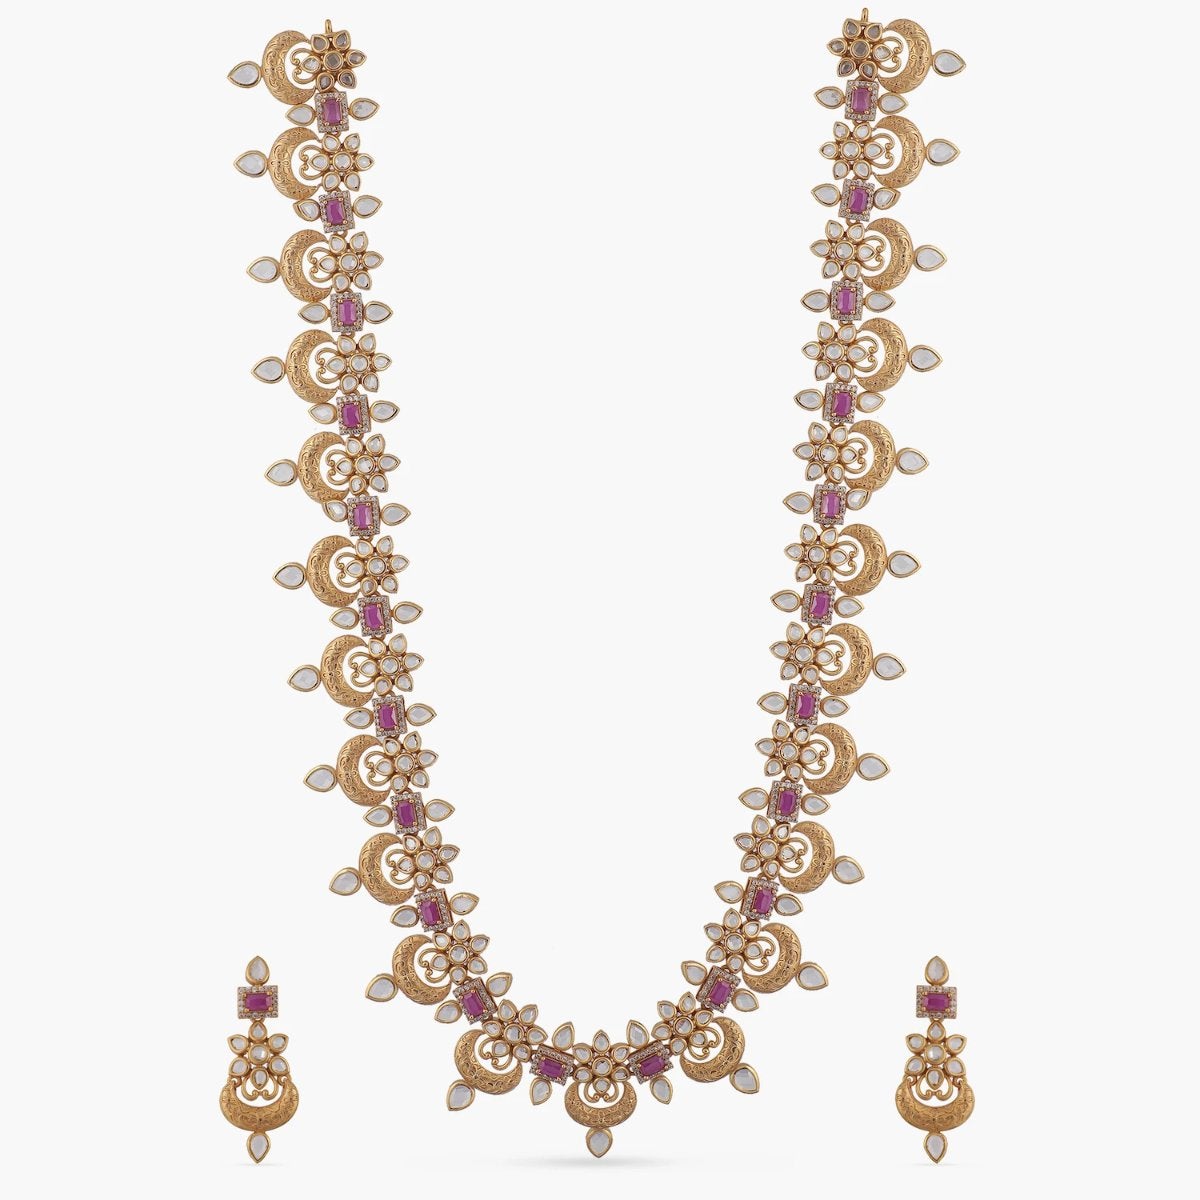 Maira Antique Long Necklace Set